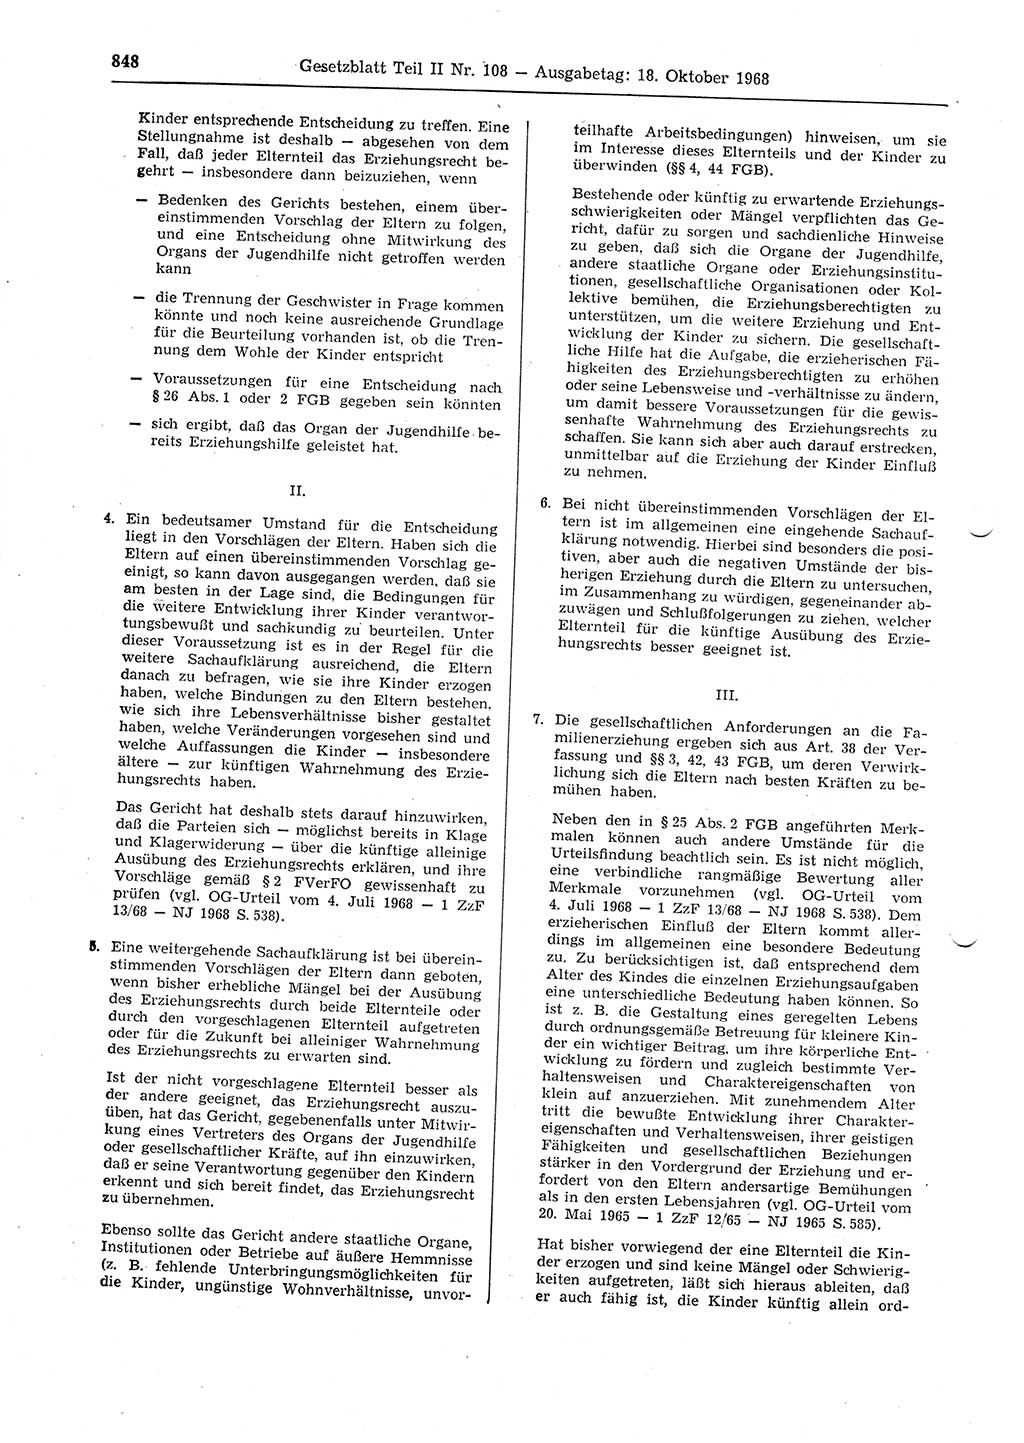 Gesetzblatt (GBl.) der Deutschen Demokratischen Republik (DDR) Teil ⅠⅠ 1968, Seite 848 (GBl. DDR ⅠⅠ 1968, S. 848)